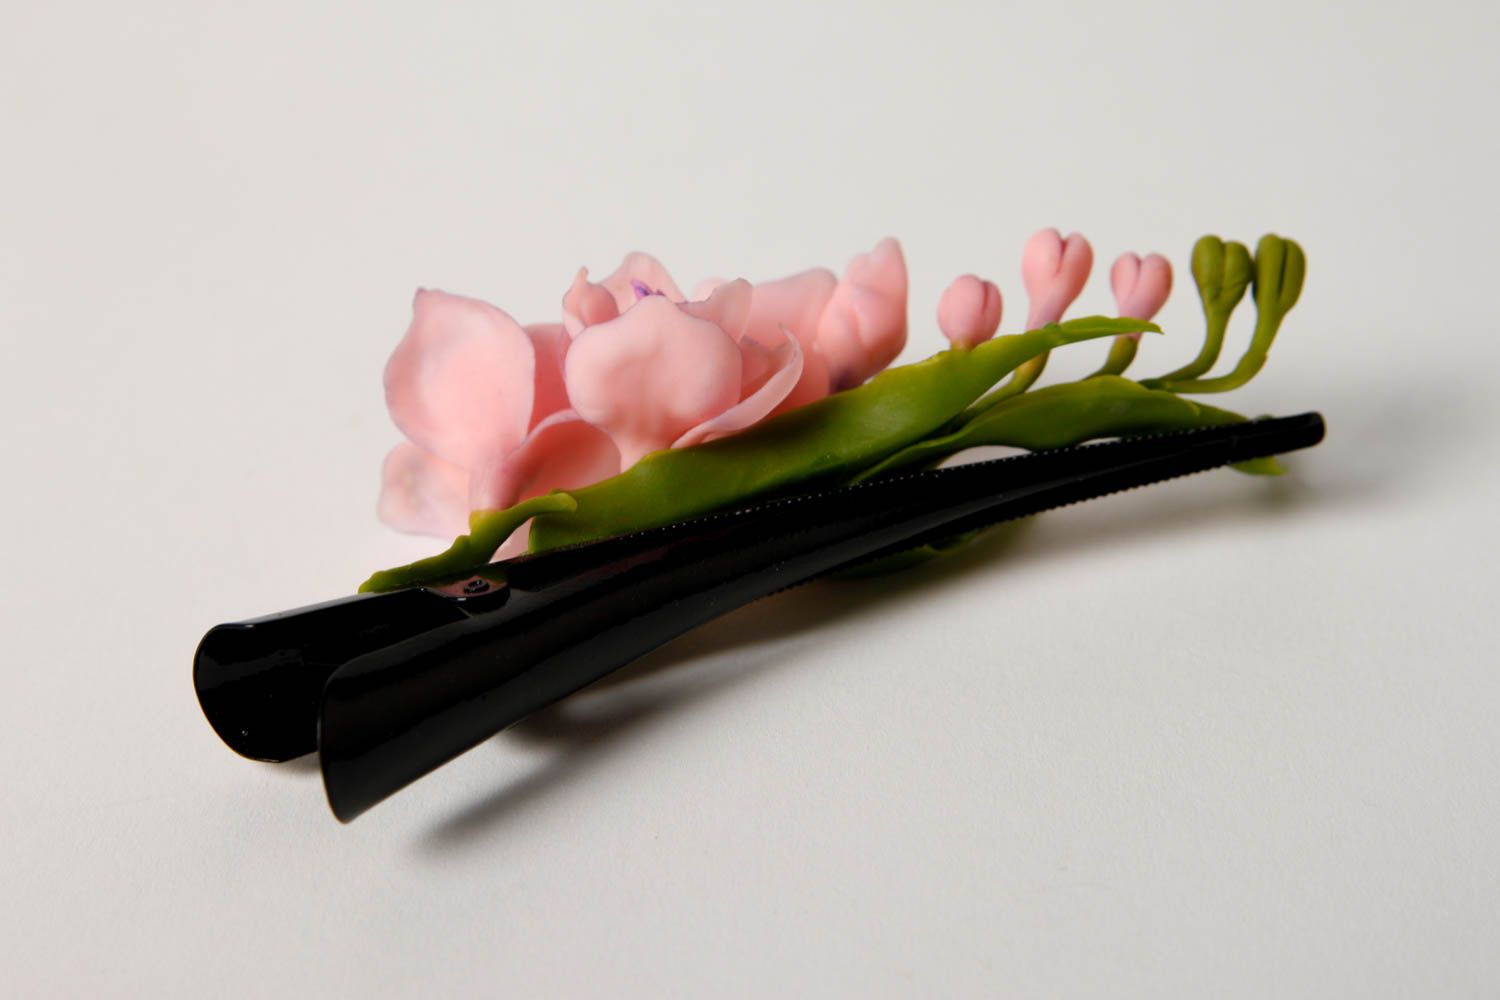 Handmade hair clip designer hair clip flower hair accessory gift ideas photo 4